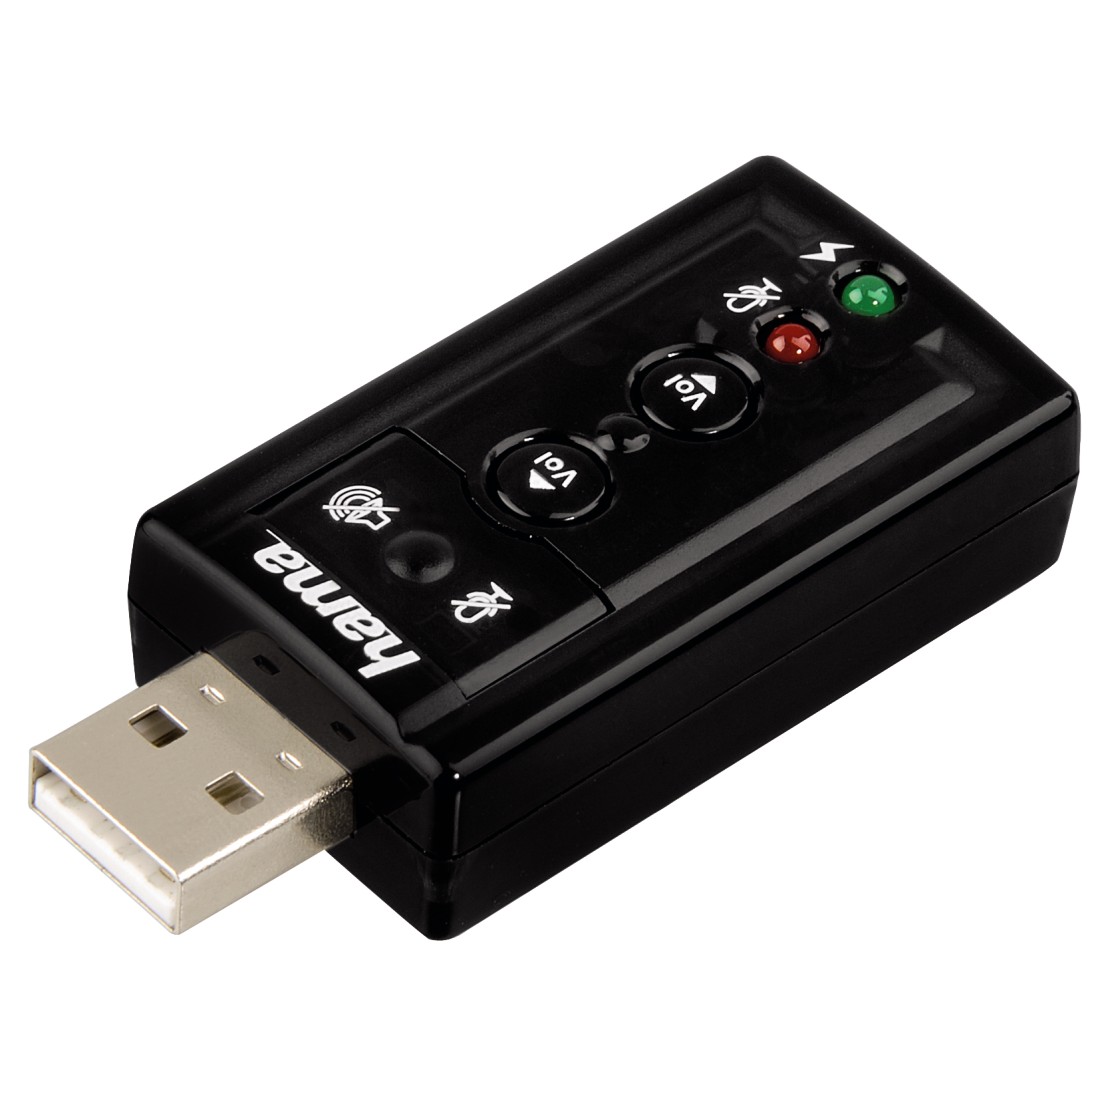 Купить usb 7. Звуковая карта Hama 51620. Hama Surround 7.1 h-51620. Звуковая карта USB C-Media cm108 (OEM). Внешняя звуковая карта Hama 7.1 Surround USB.